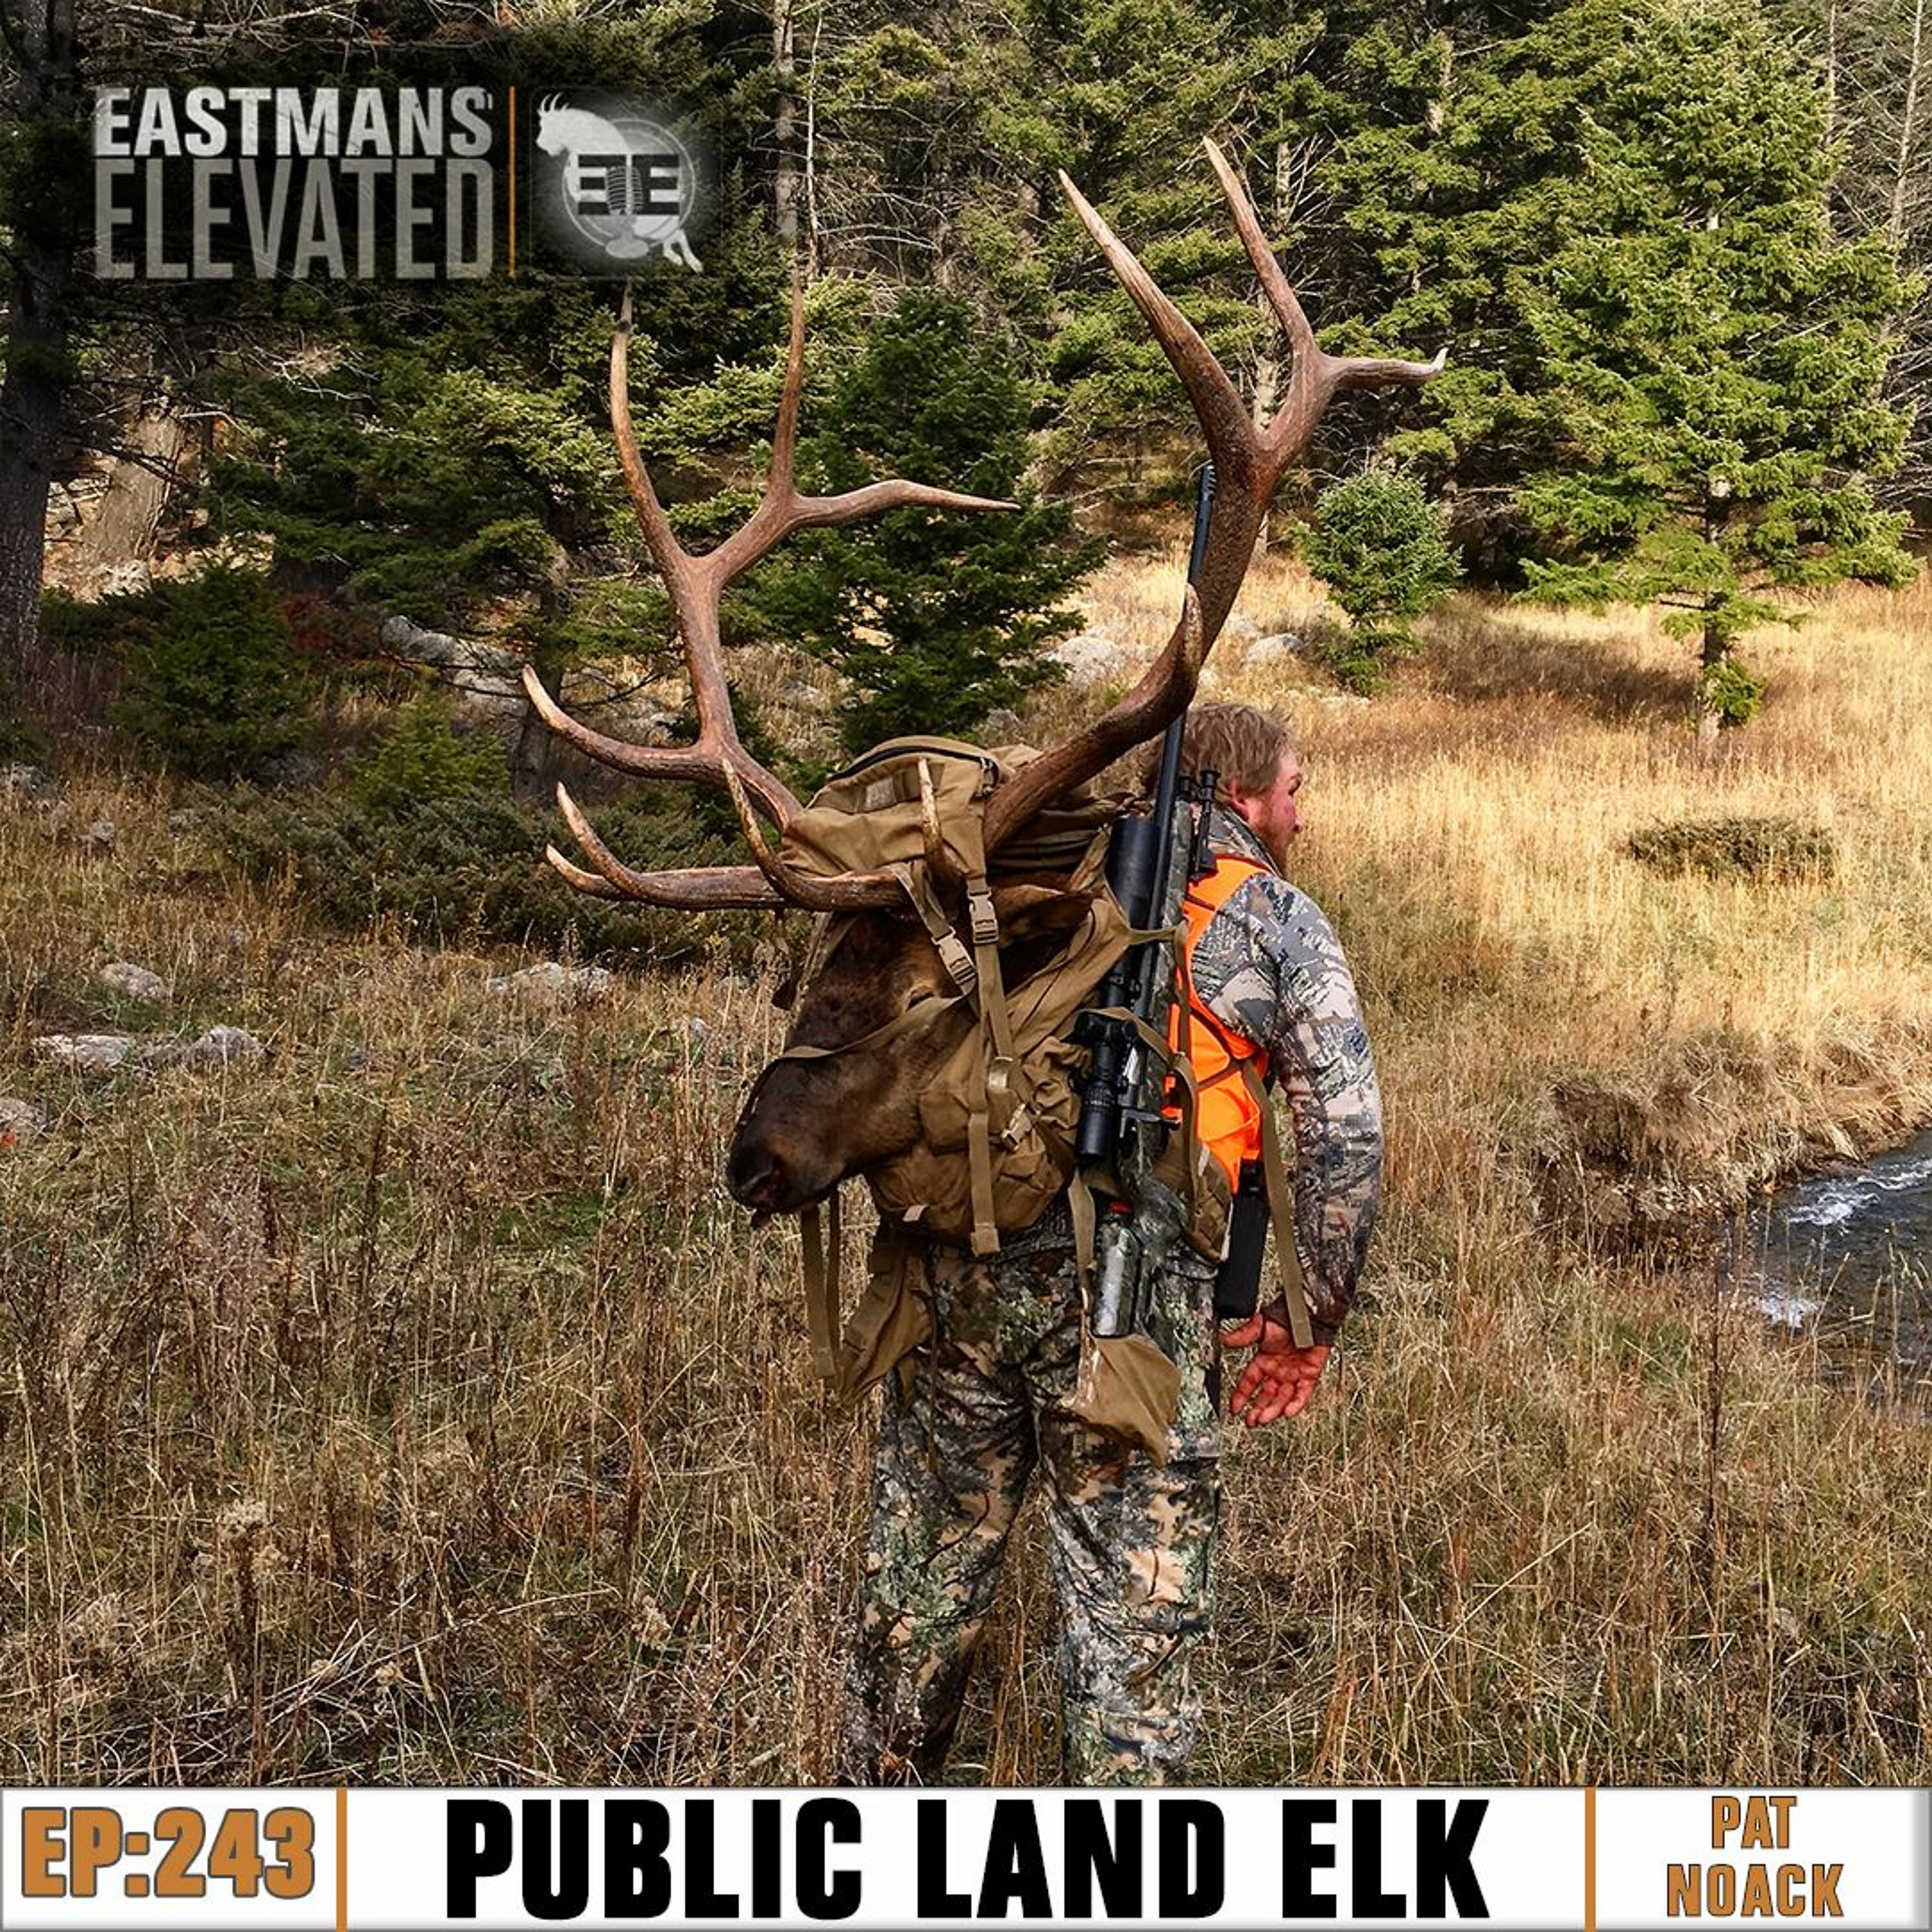 Episode 243: Public Land Elk with Pat Noack